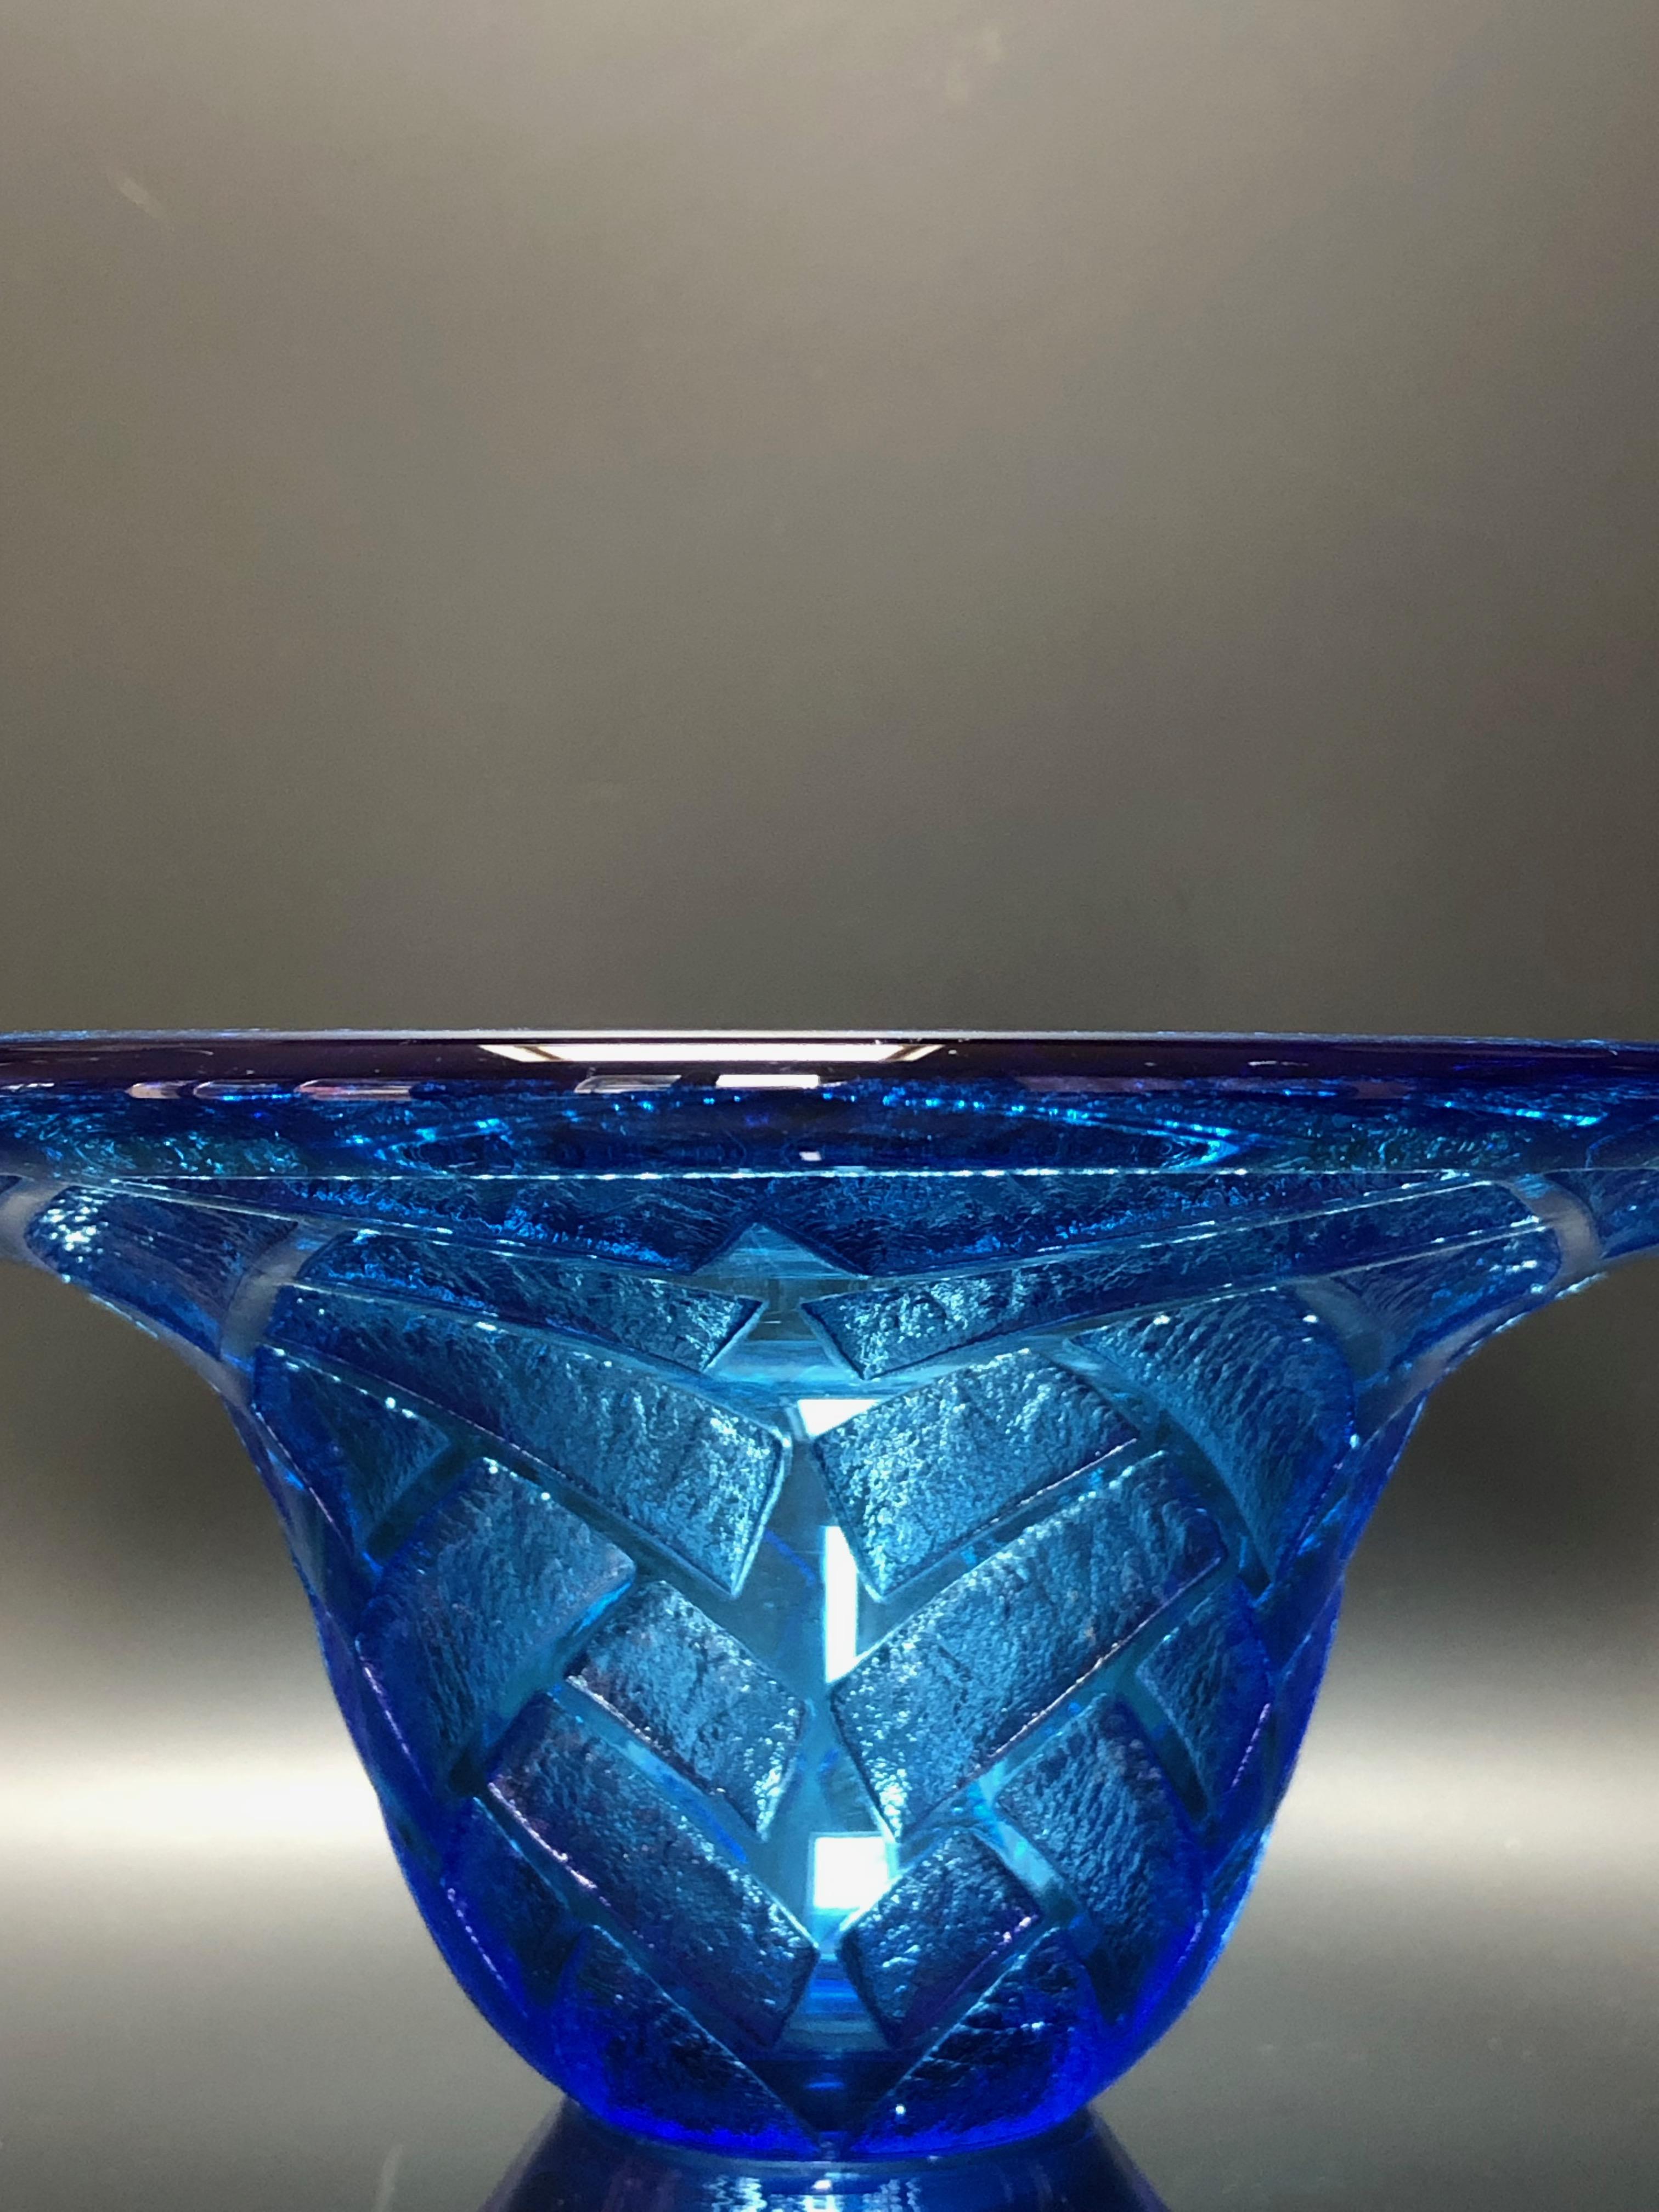 Coupe bleue gravée à l'acide avec un décor géométrique circa 1930 signée à la base Daum Nancy France.
 1 petit défaut d'acidité à la base (Photo)


Matériau : Verre
Diamètre : col 18,7 cm 
Diamètre de la base 6,2 cm
Hauteur : 10,3 cm
Poids : 800